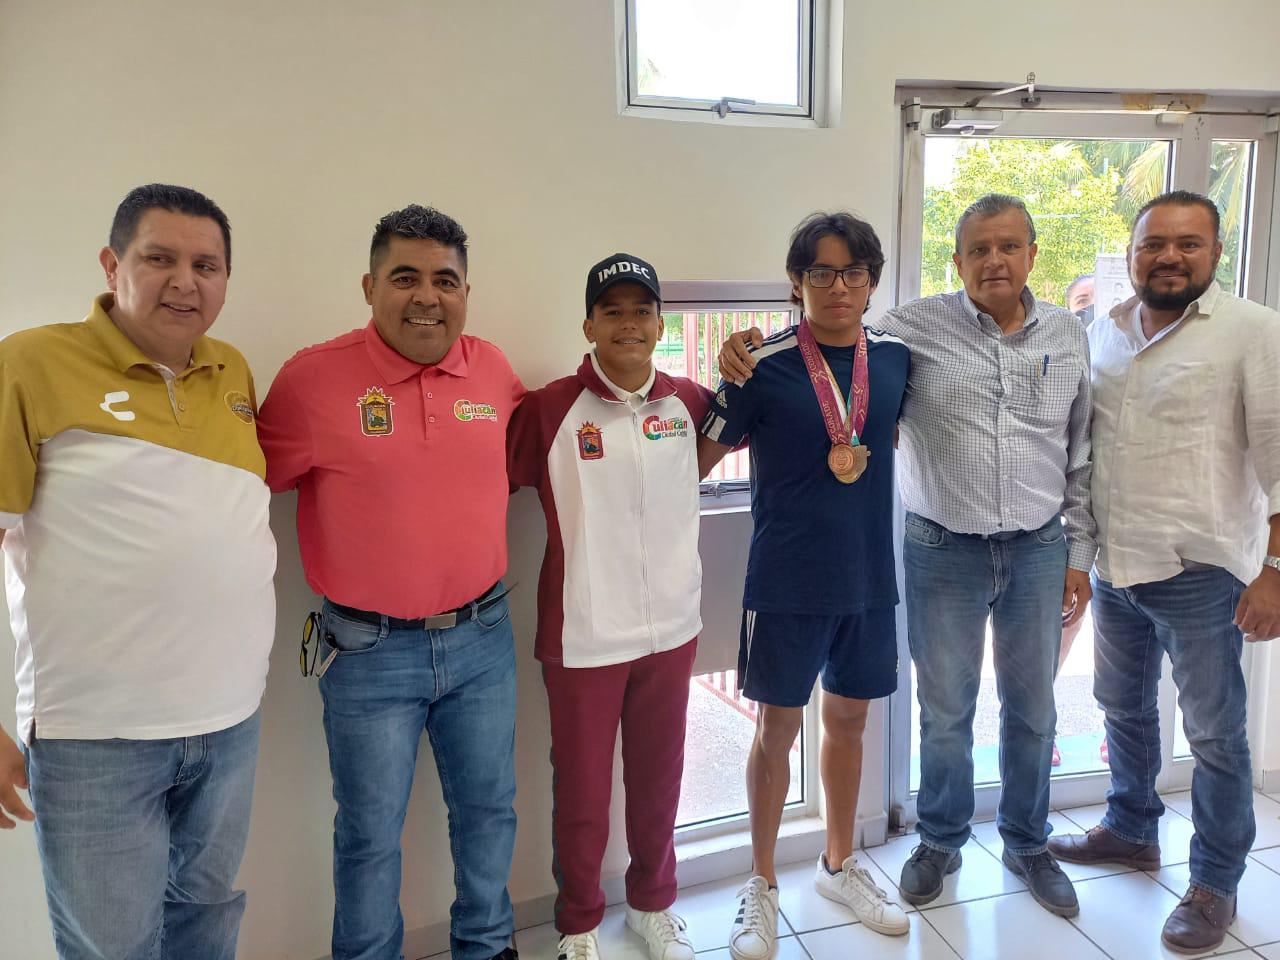 $!Aarón Ibarra y Luis Urías, medallistas culiacanenses en Nacionales Conade, visitan el Imdec